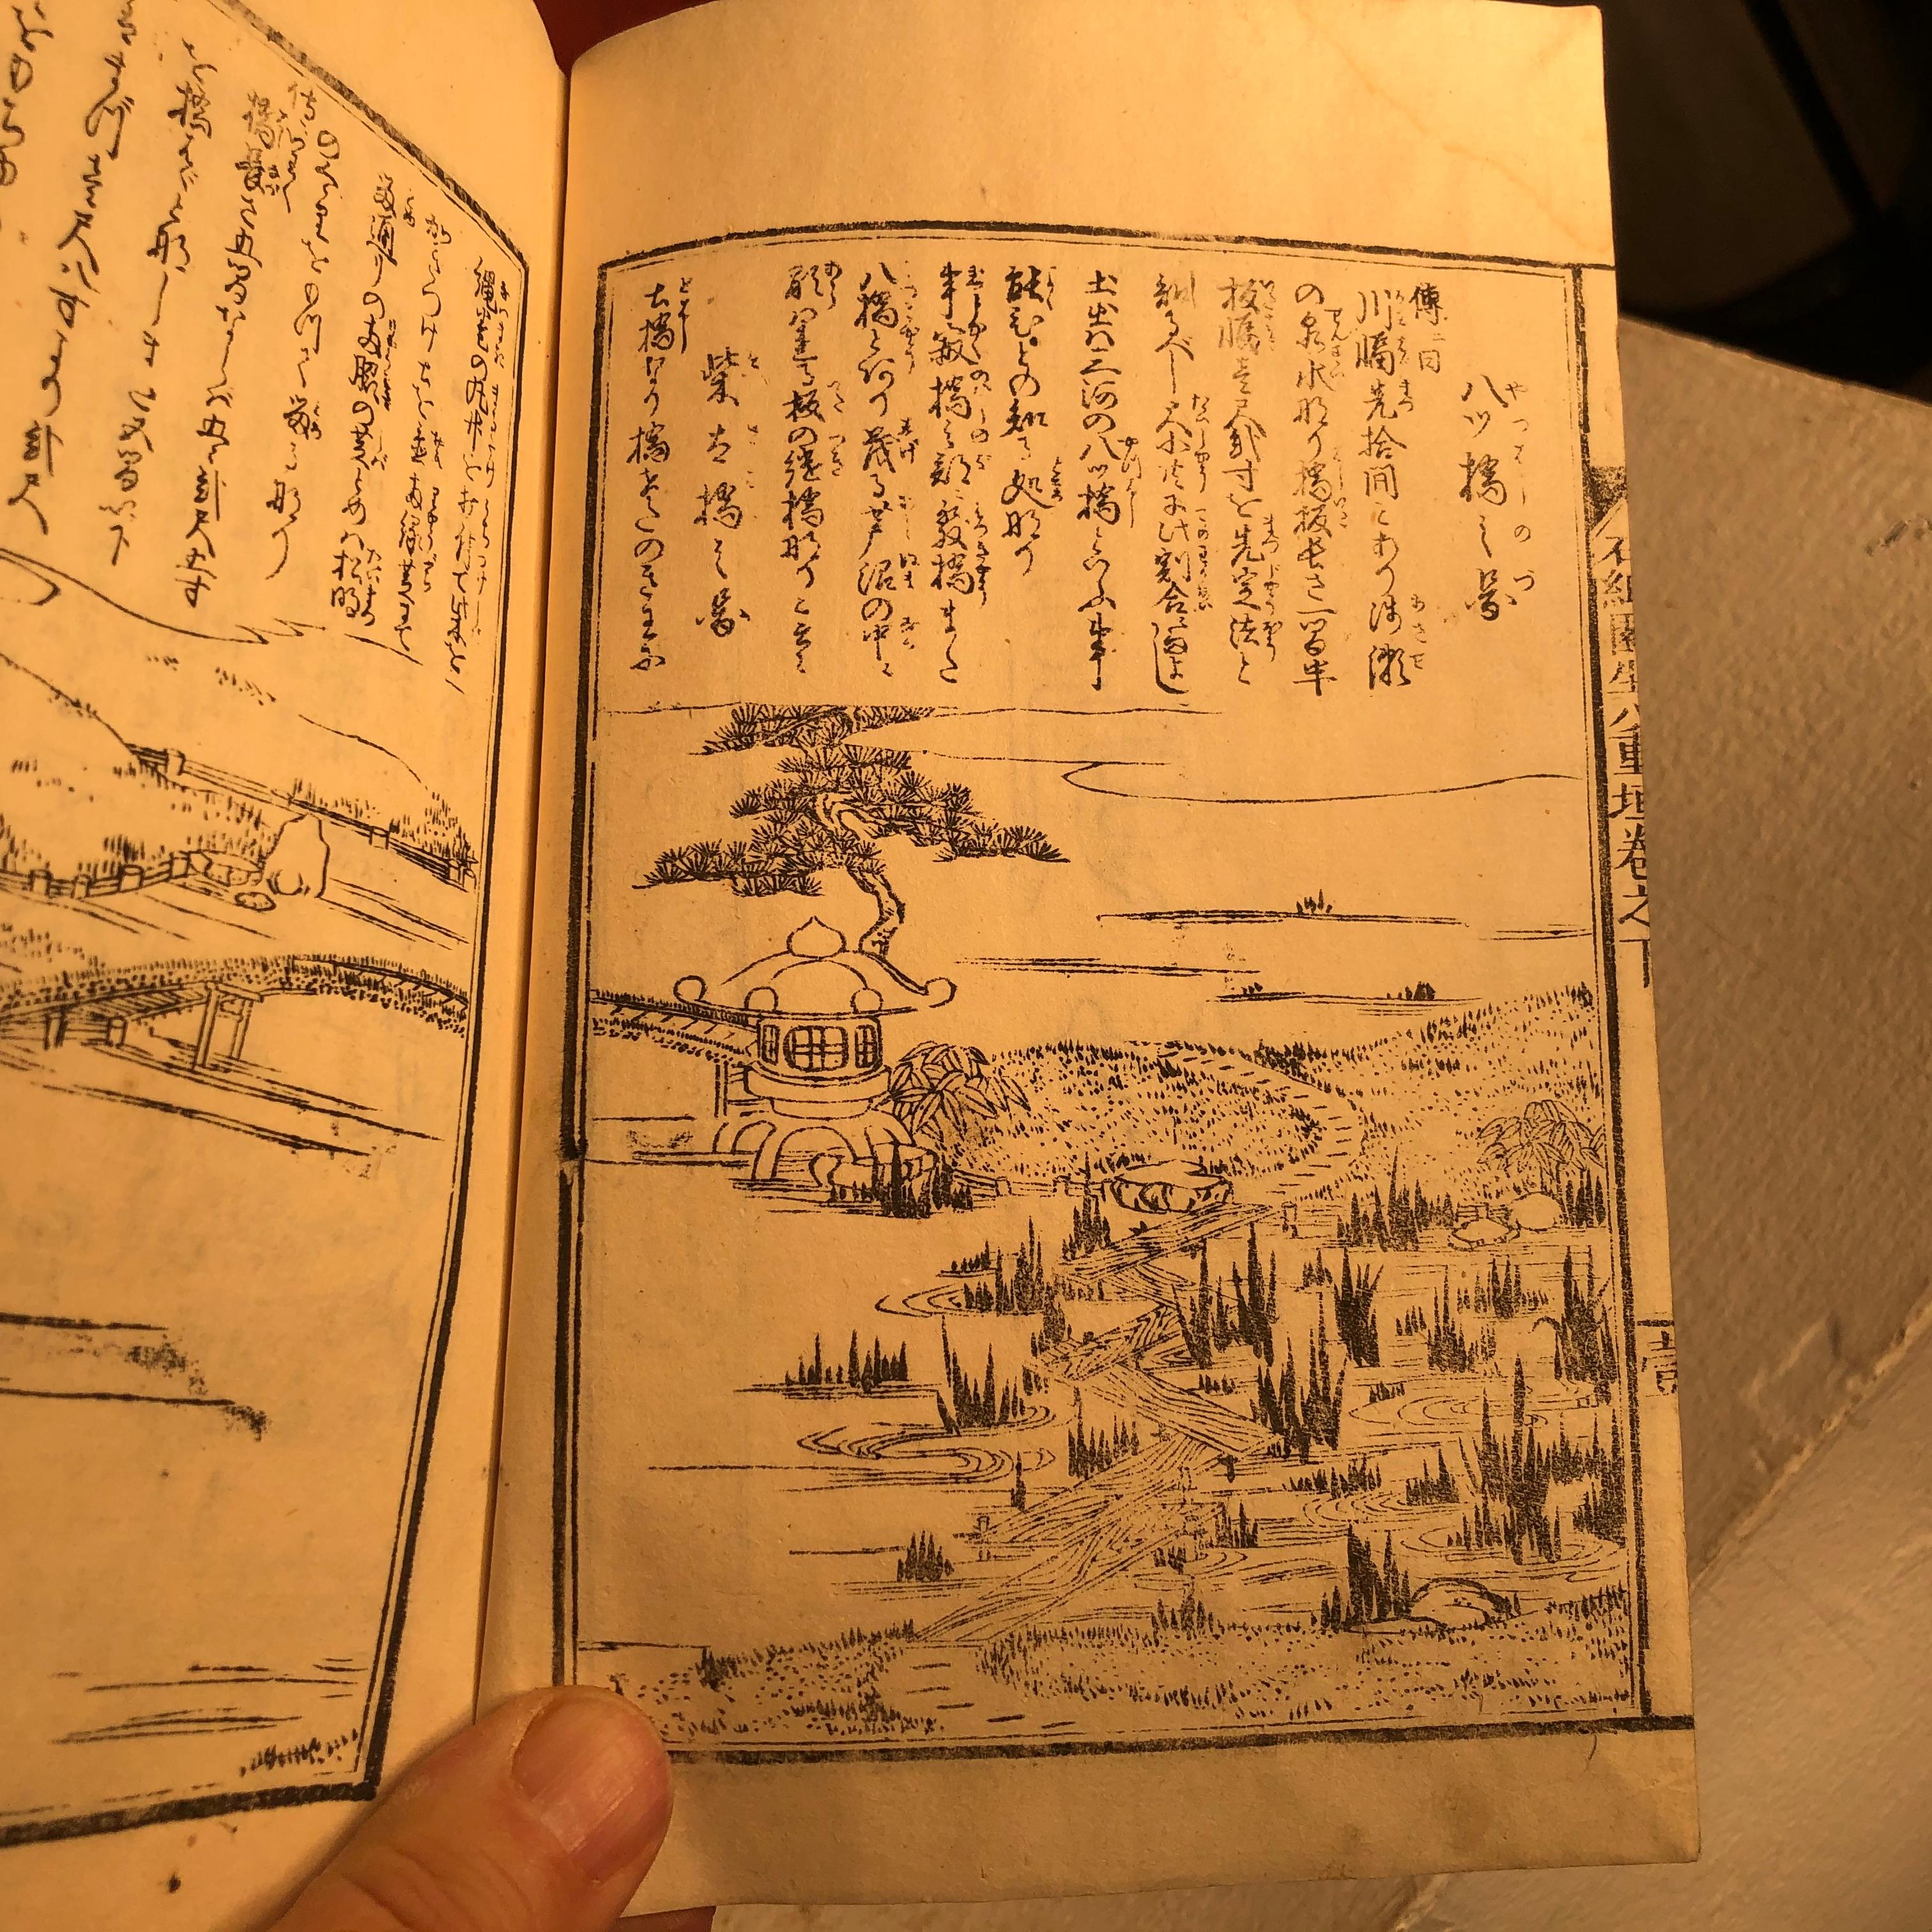 Paper Japanese Antique Garden Plans & Designs Complete Woodblock Set Four Books